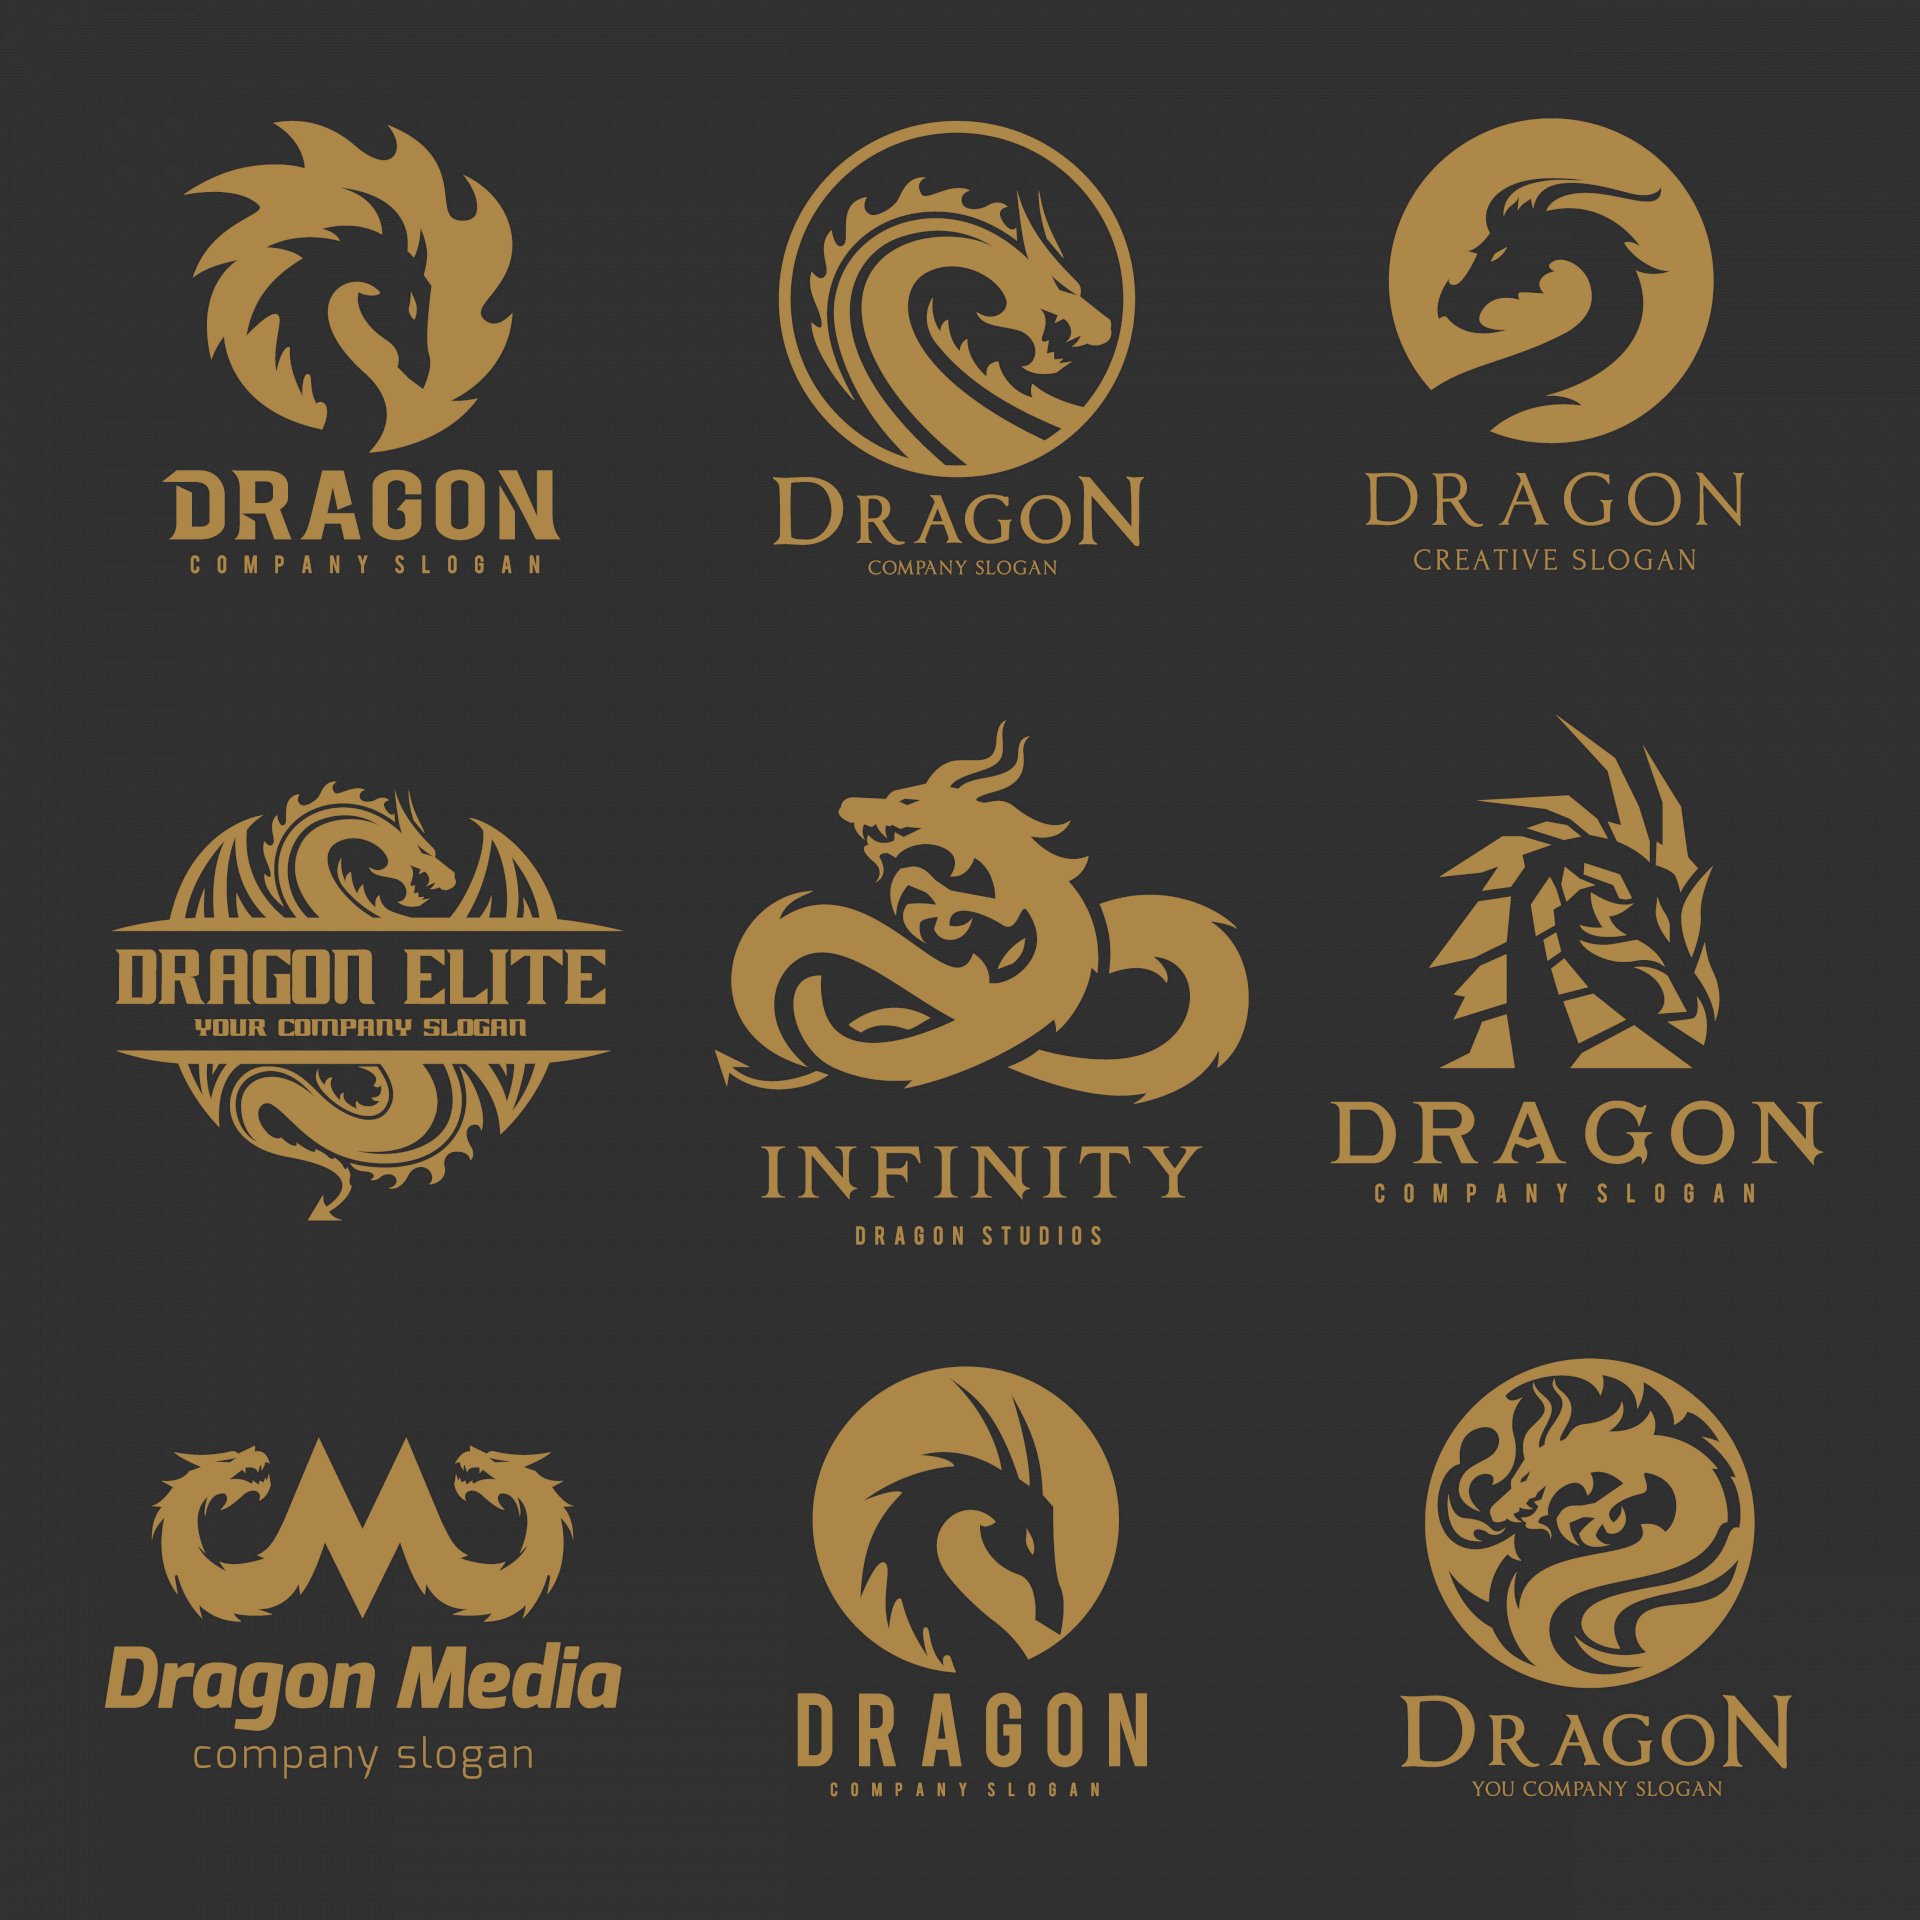 Logo rồng - Chỉ cần nhìn vào Logo rồng tinh xảo này, bạn sẽ cảm nhận được sức mạnh và uy lực của con rồng. Hãy nhấp chuột và khám phá sức hút không thể cưỡng lại của logo rồng.